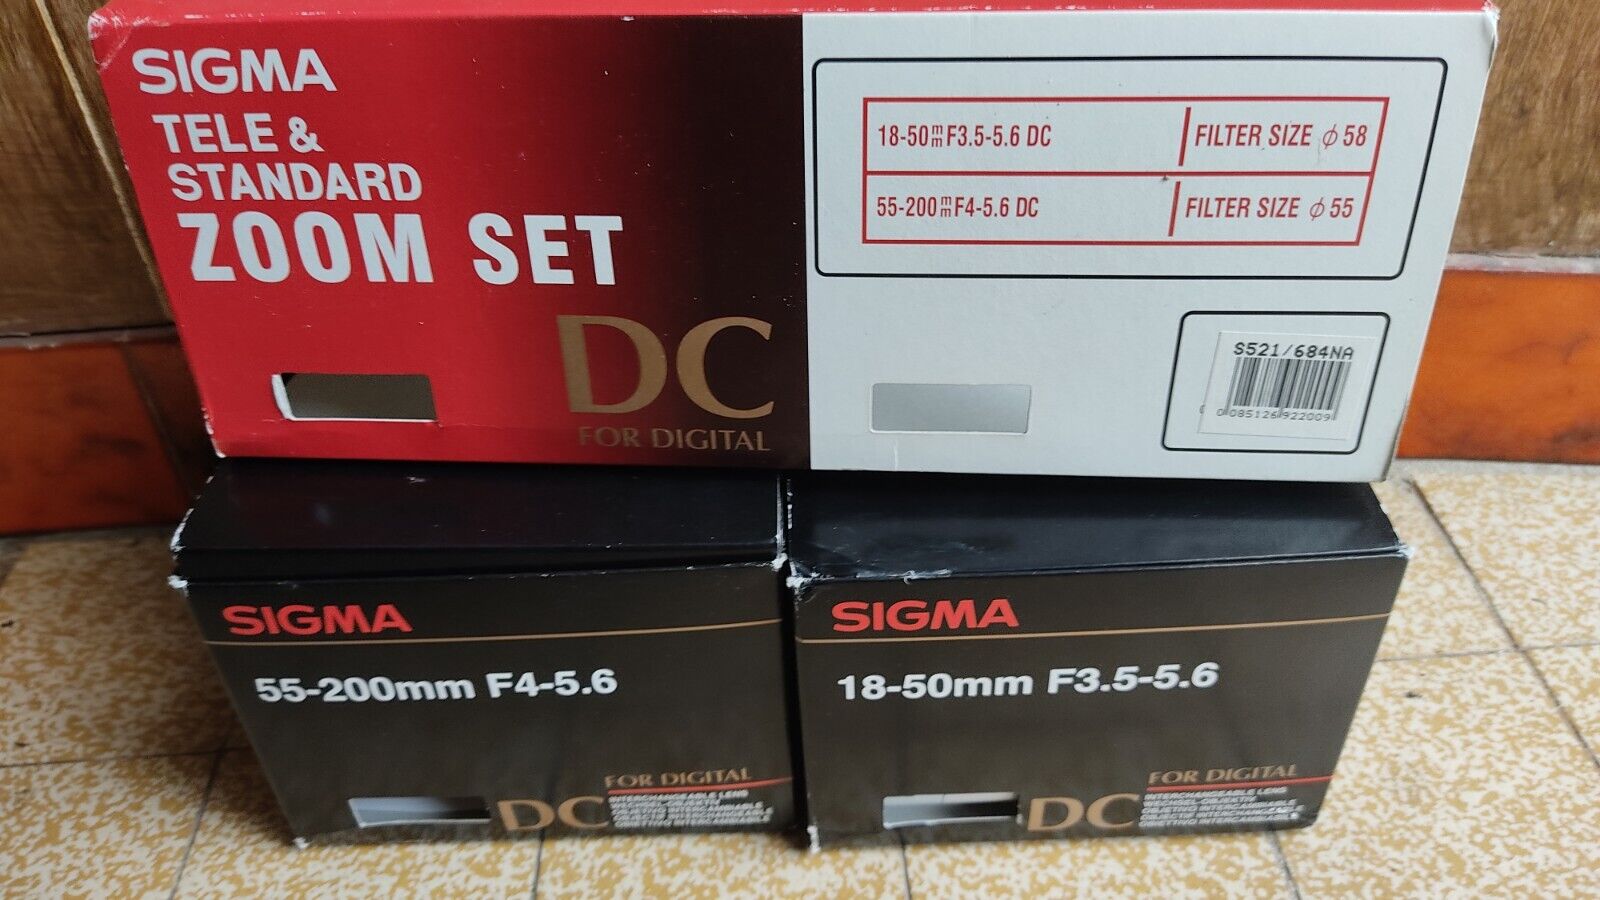 KIT SIGMA 18-50mm F3.5-5.6 + 55-200 F4-5.6 pour Nikon DC | eBay